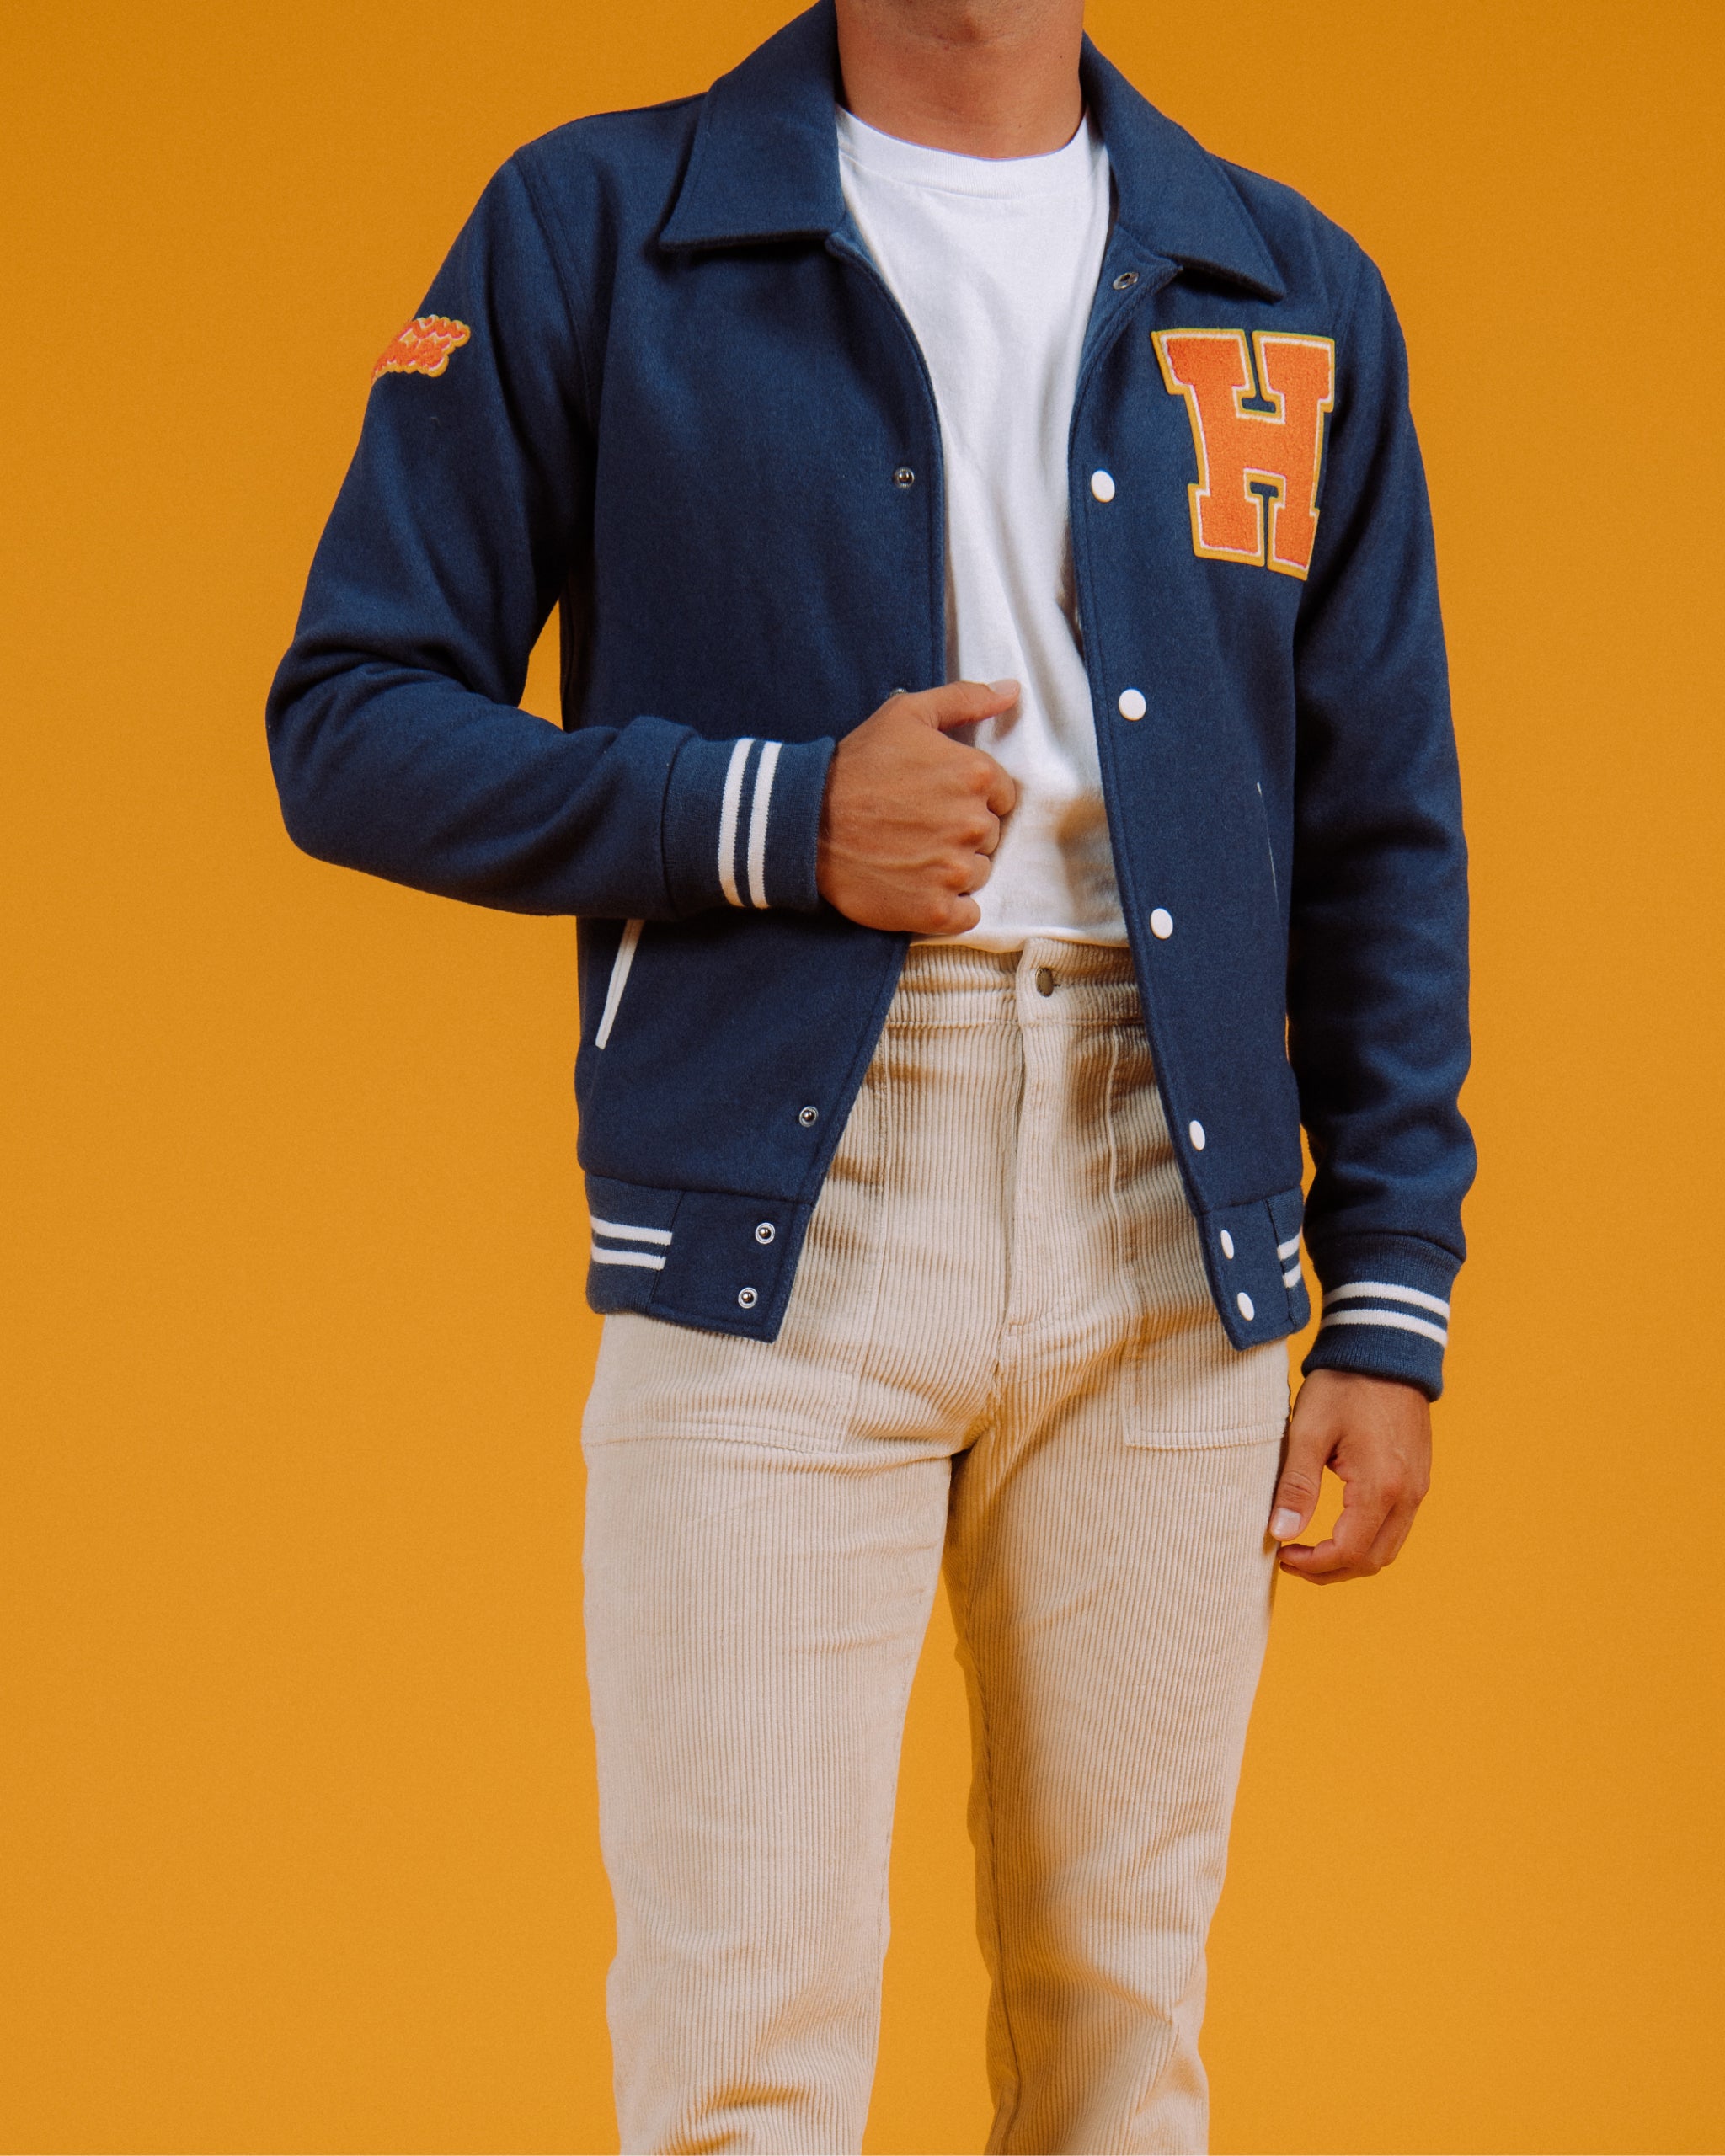 11 Ways to Wear a Letterman Style Jacket